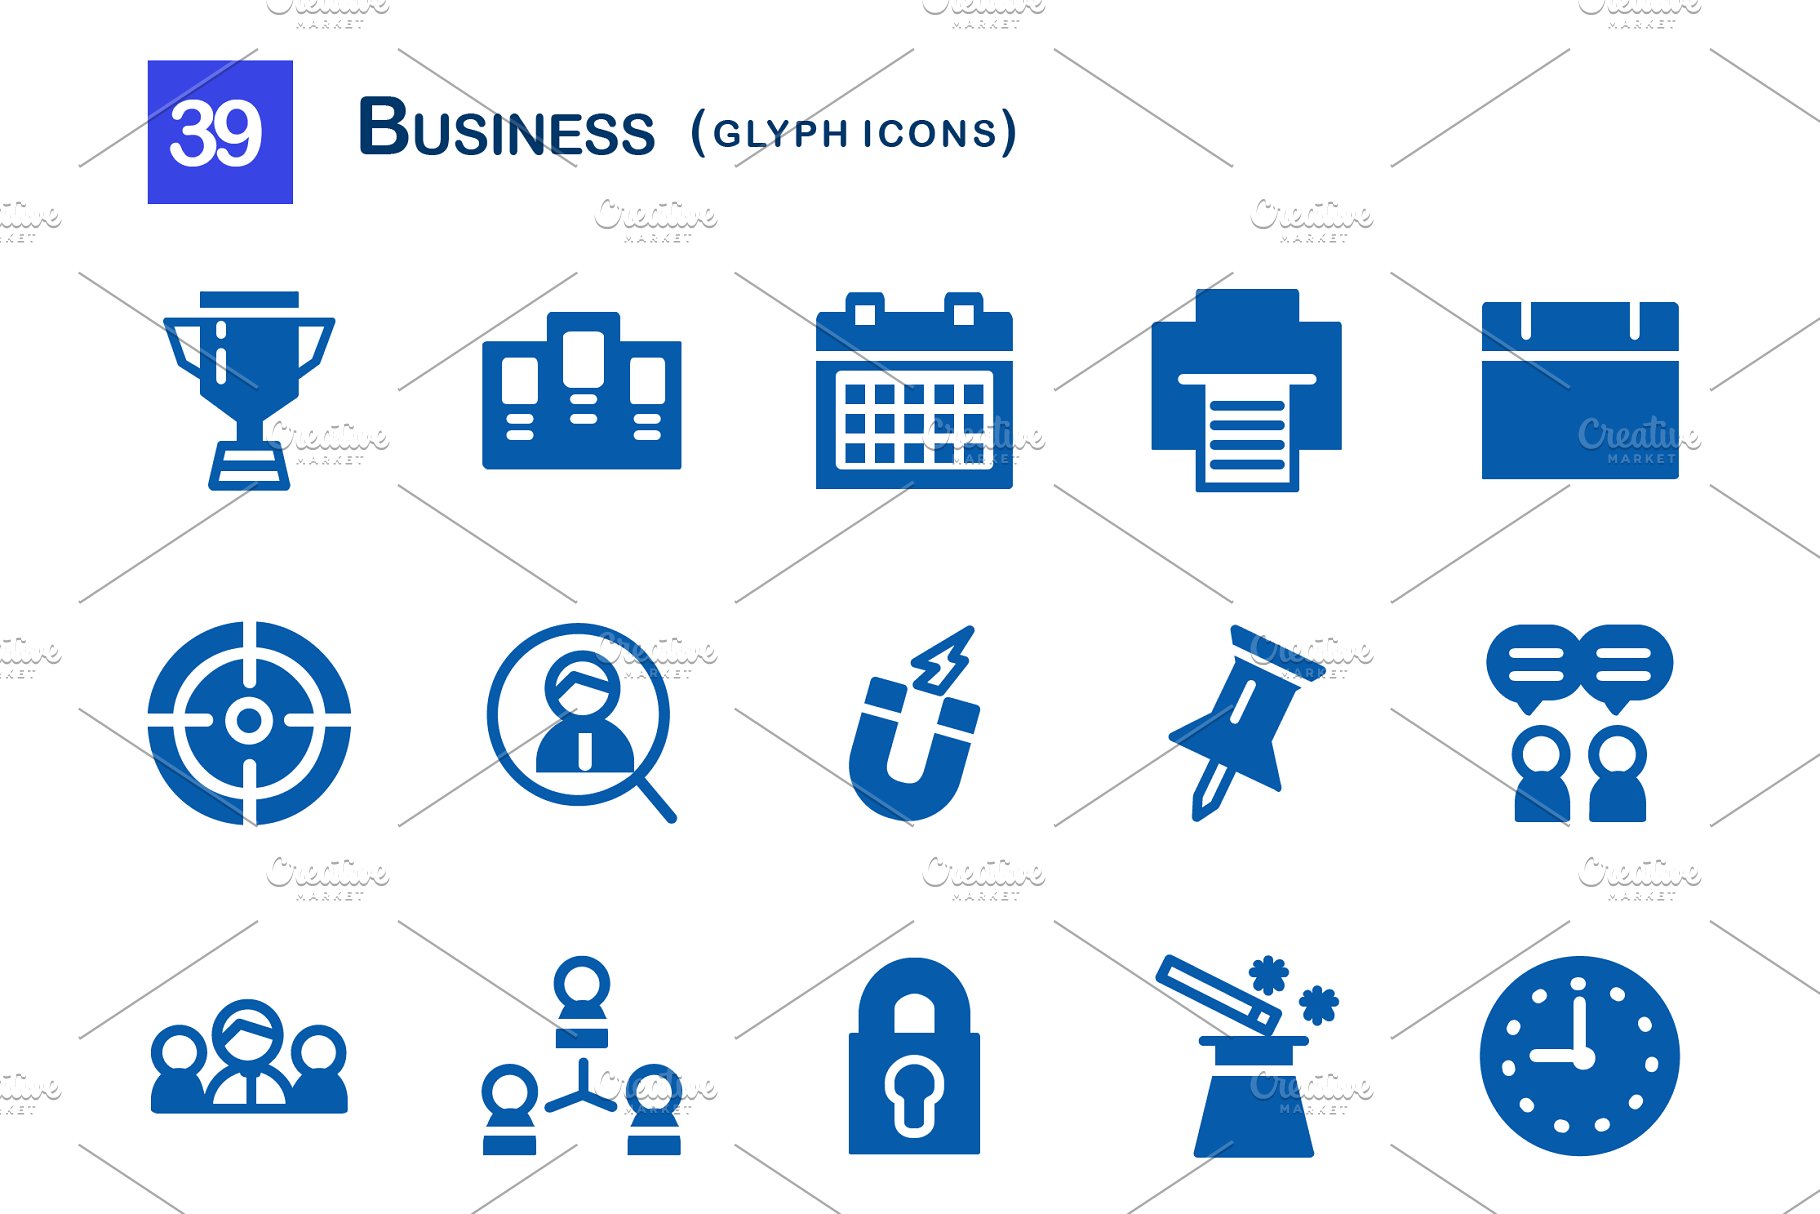 39个企业商务主题业务符号图标 39 Business Glyph Icons插图(1)